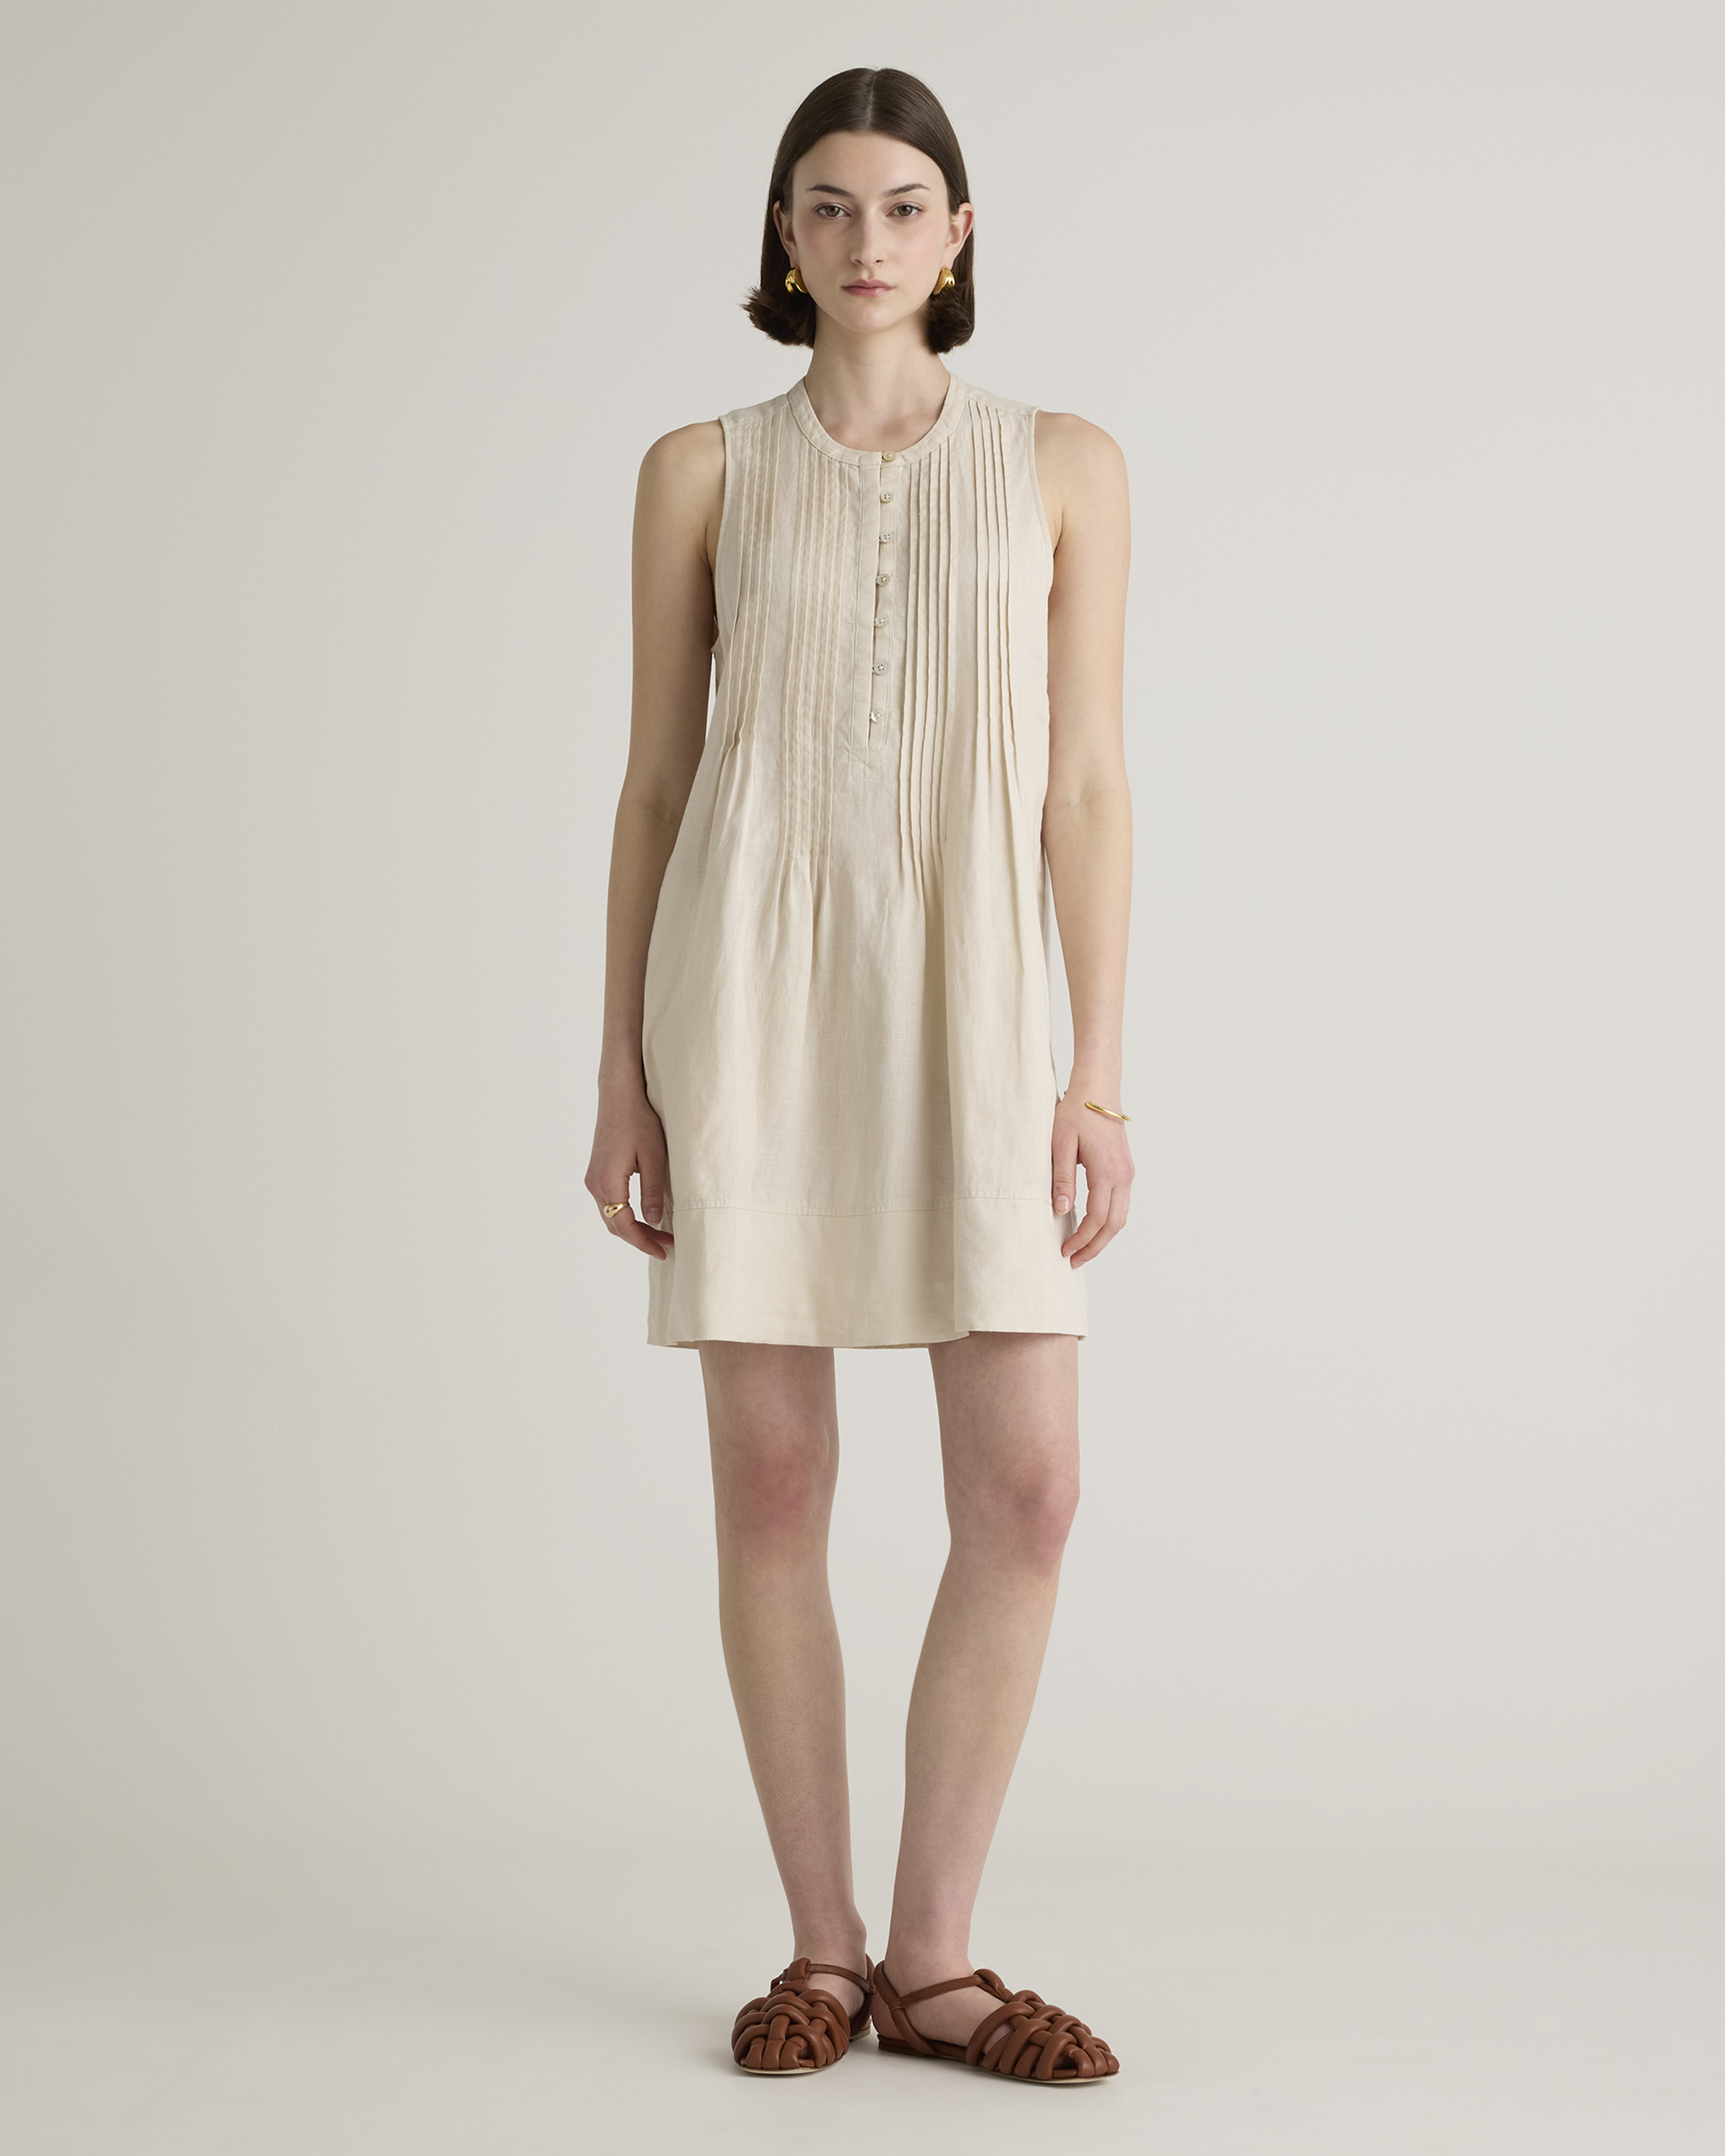 Shop Quince Women's 100% European Linen Sleeveless Swing Dress In Sand